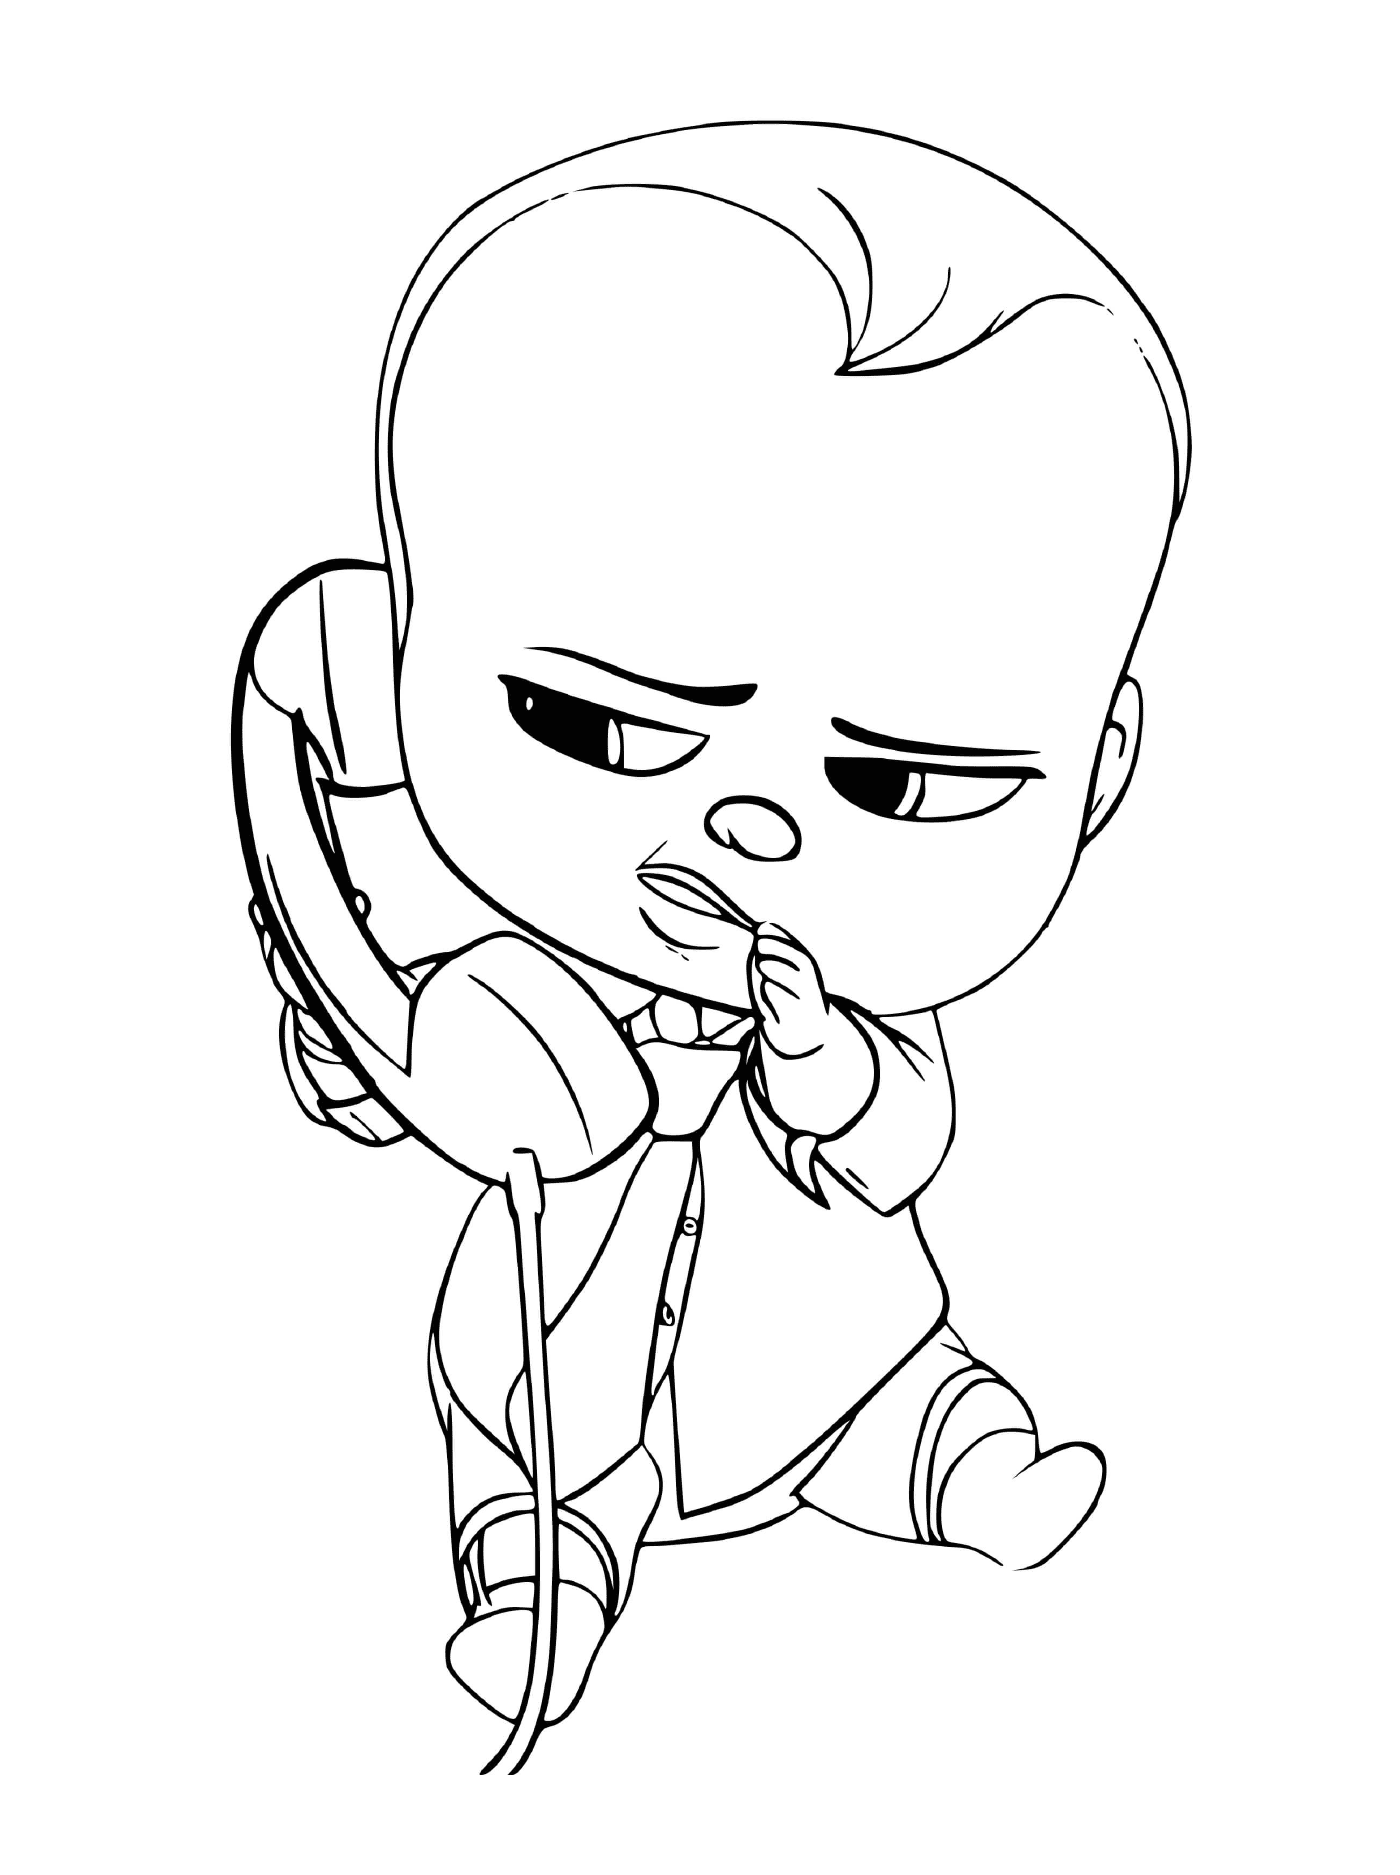  Ein Baby weint mit einem Telefon 